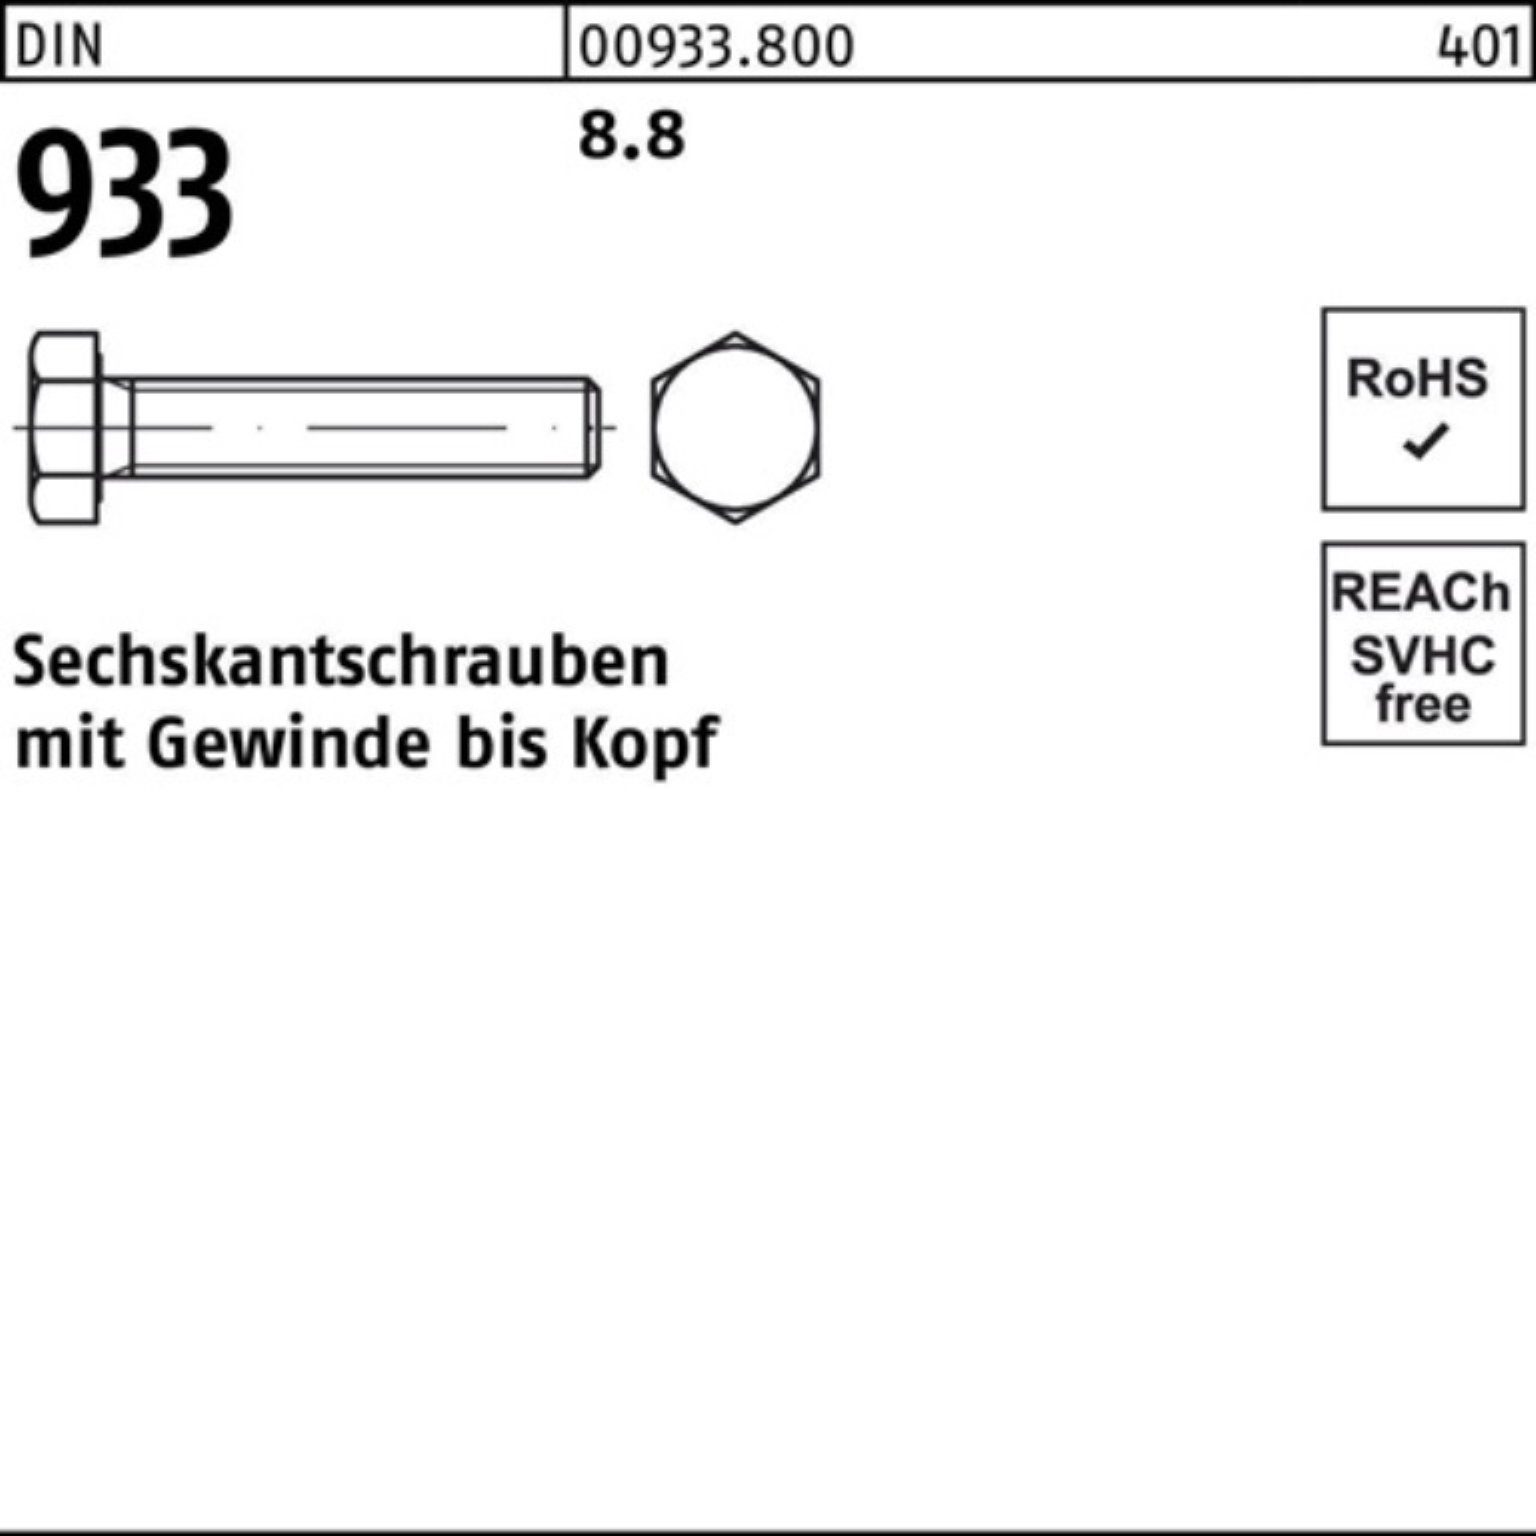 Reyher Sechskantschraube 100er Pack Stück DIN 100 VG 8.8 DIN M6x 933 933 Sechskantschraube 100